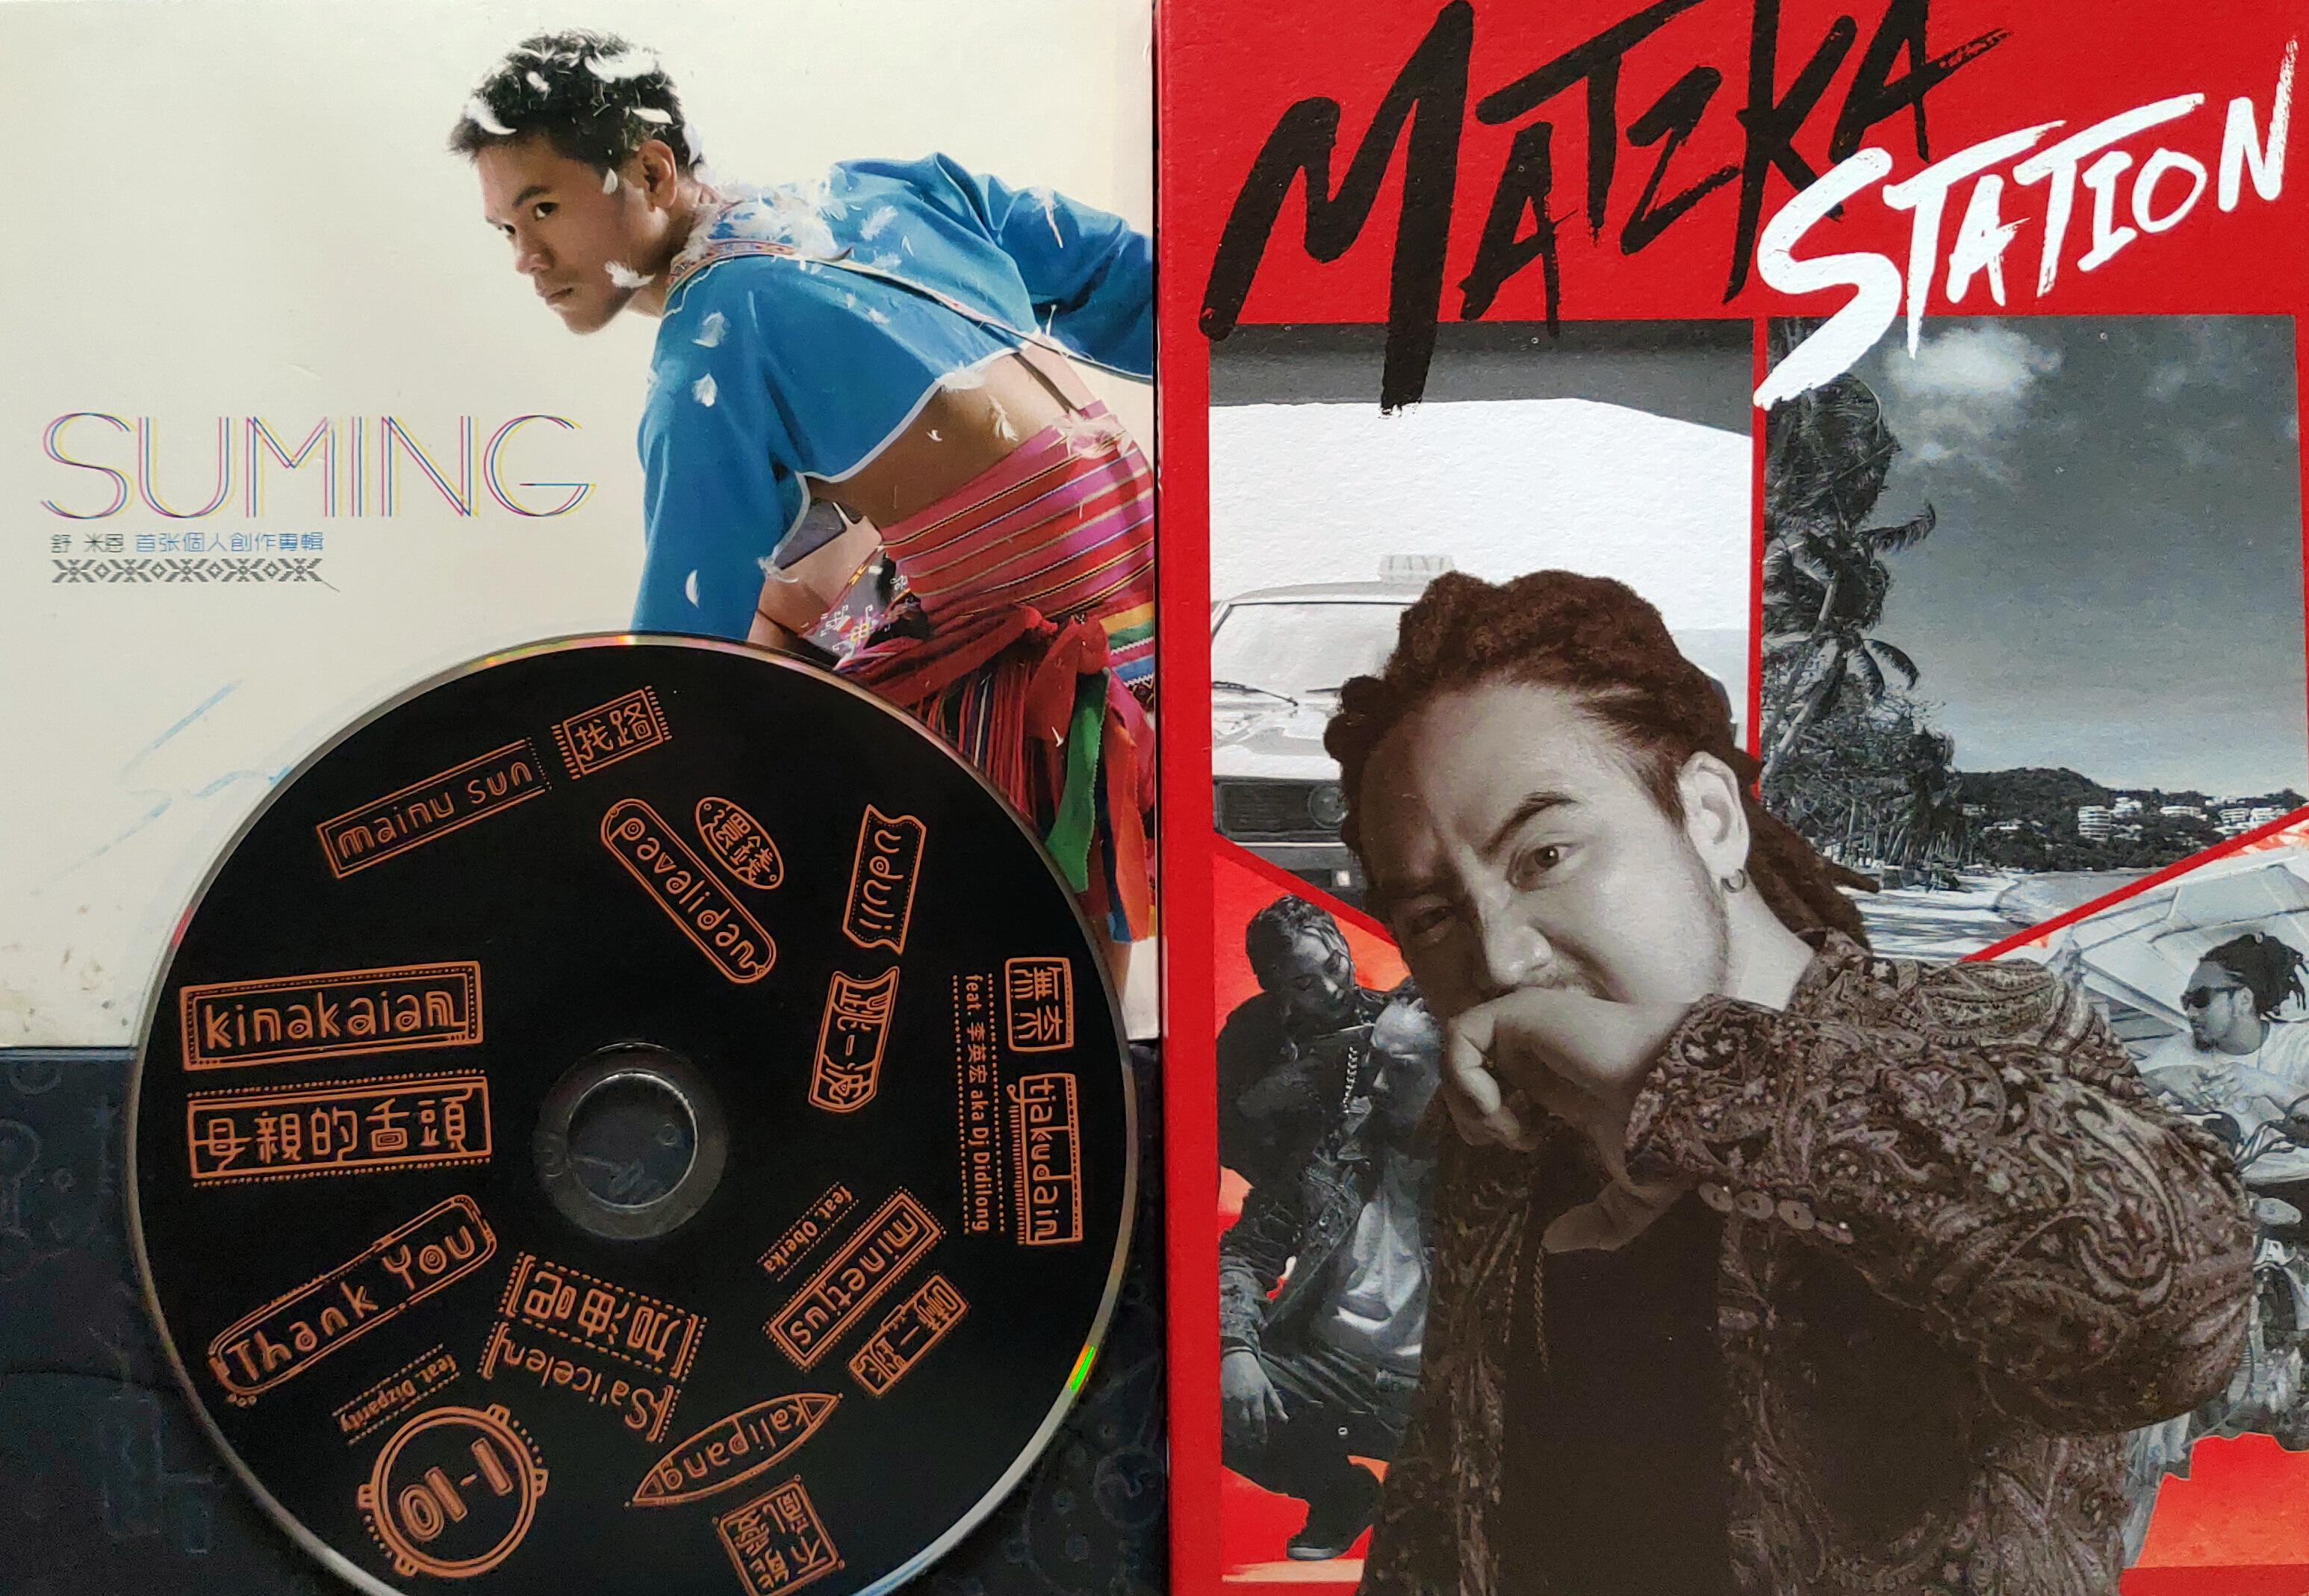 （左起）舒米恩《Suming首張個人創作專輯》、MATZKA《Matzka Station》專輯封面